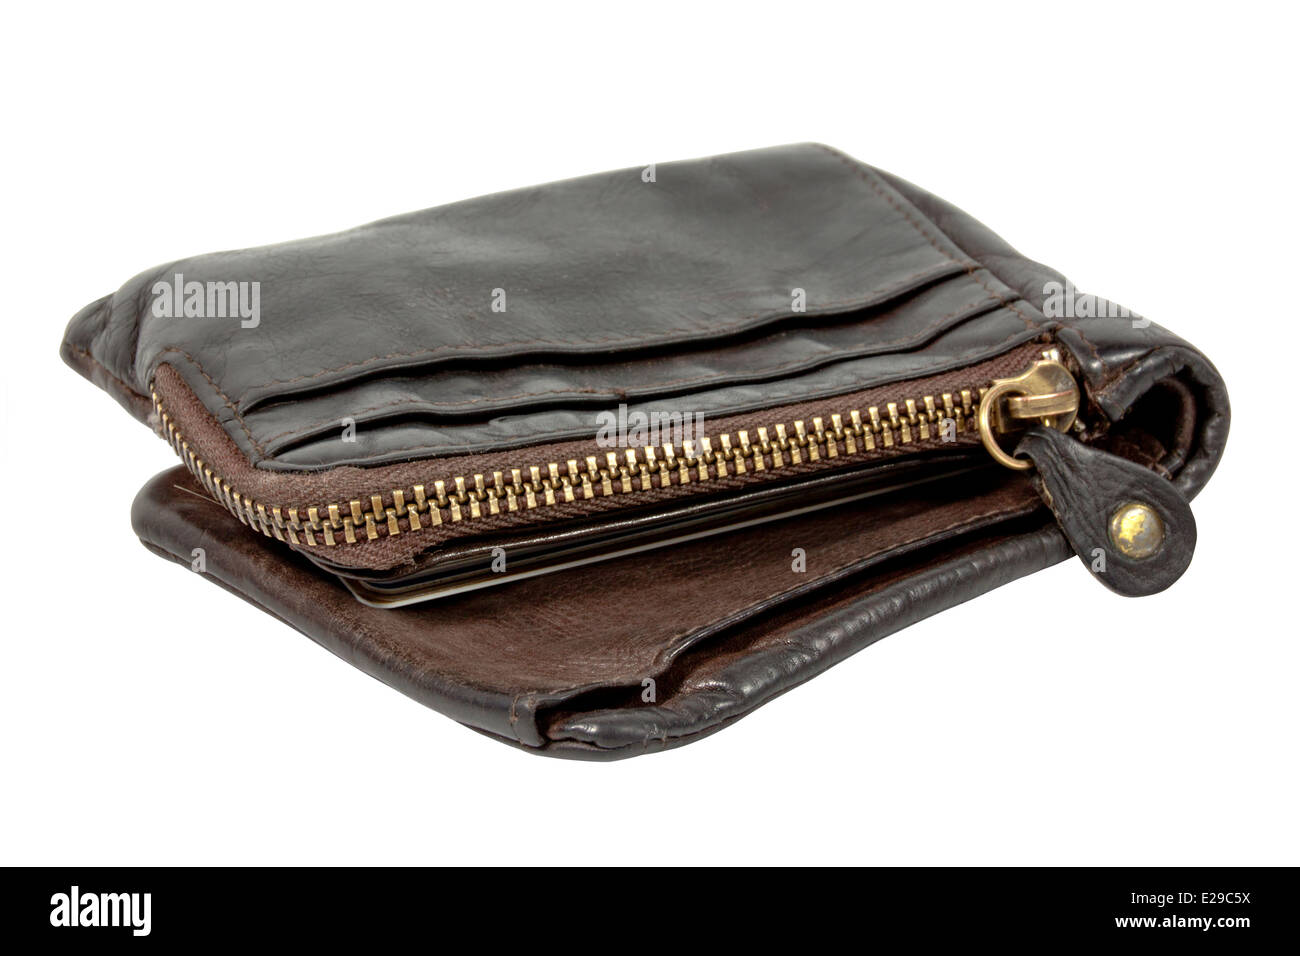 Pelle marrone portafoglio con grandi zip in ottone Foto Stock